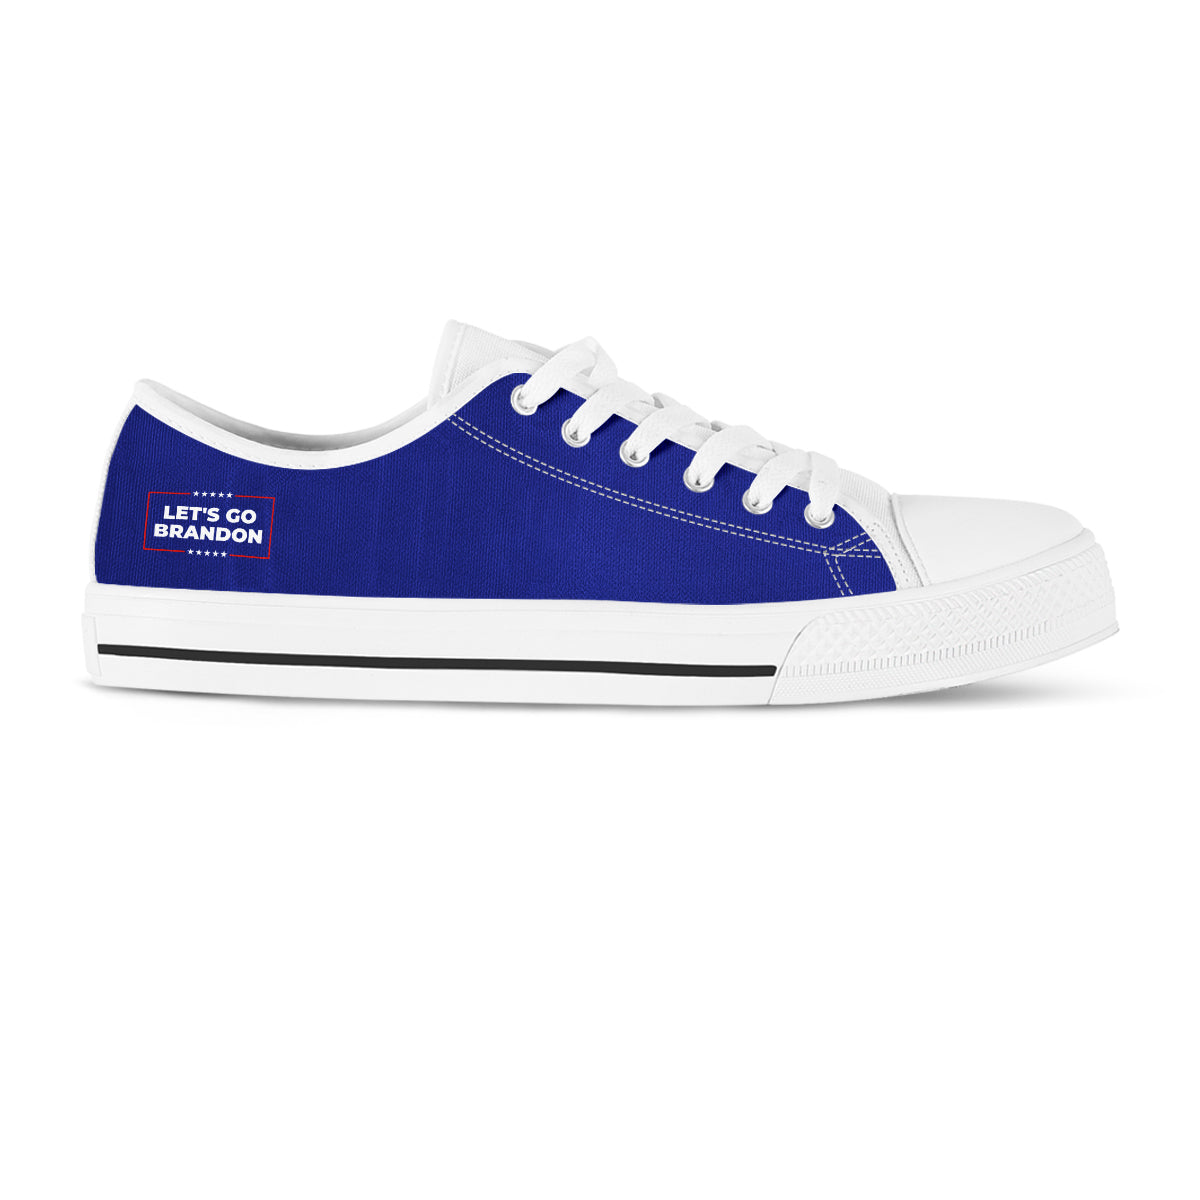 Blue - Let's Go Brandon - Low Top Shoes